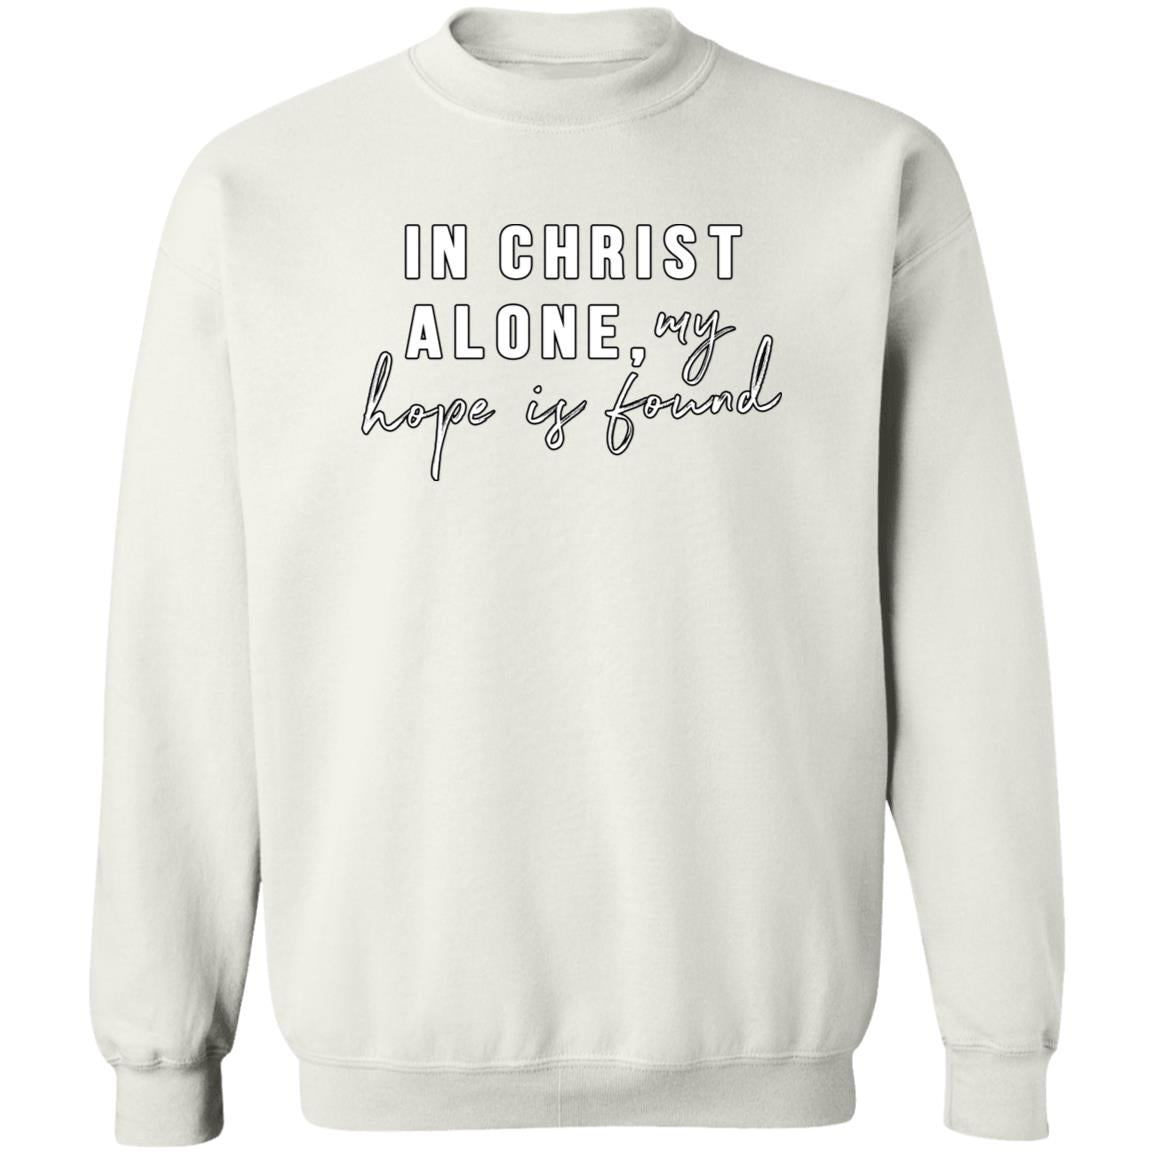 In Christ Alone (Unisex Sweatshirt)